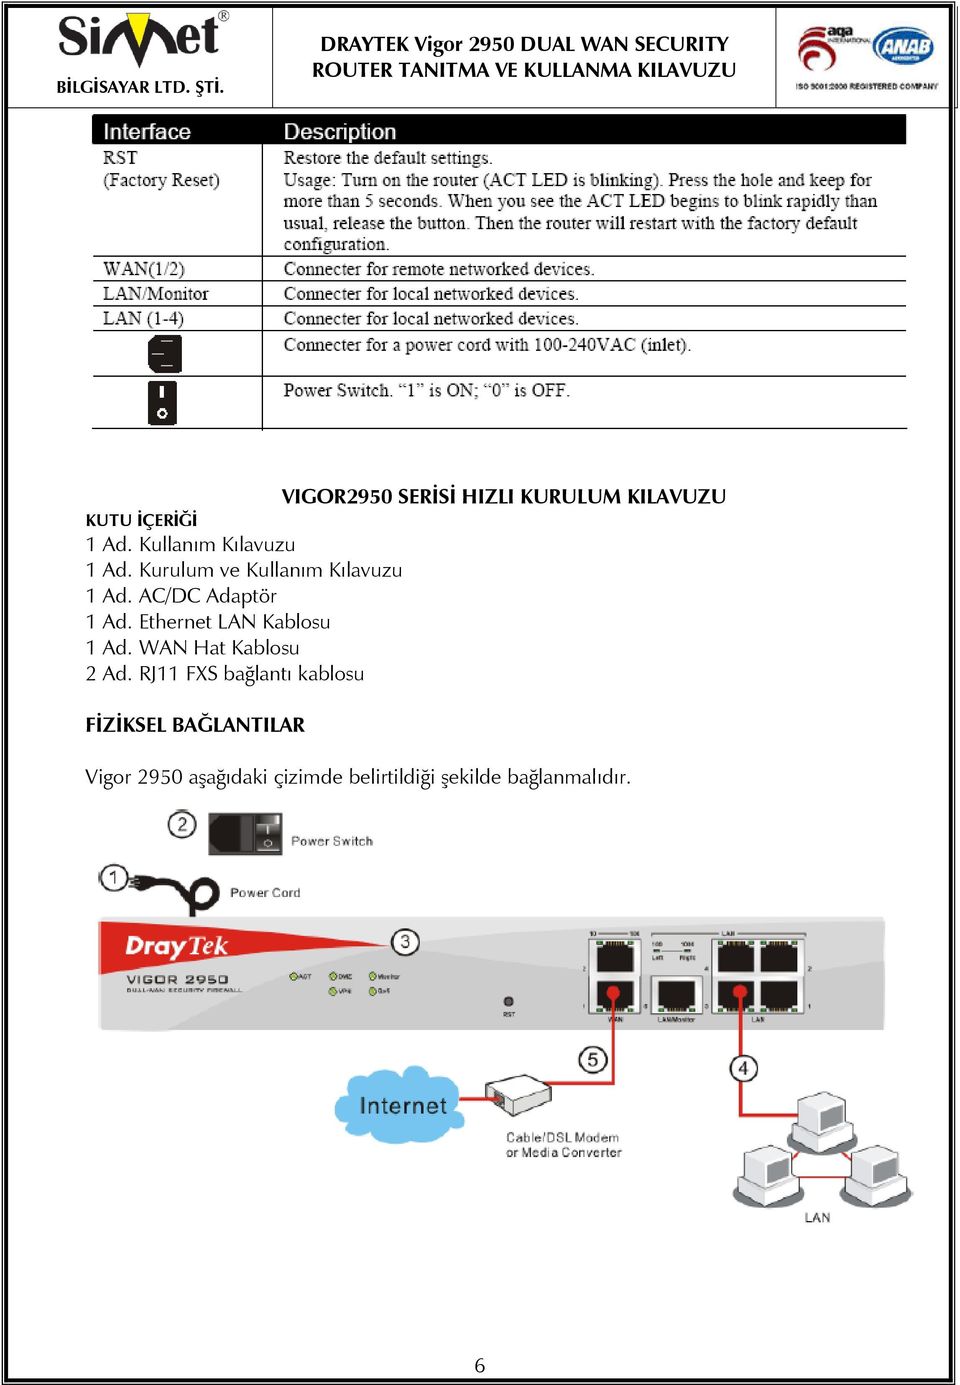 AC/DC Adaptör 1 Ad. Ethernet LAN Kablosu 1 Ad. WAN Hat Kablosu 2 Ad.